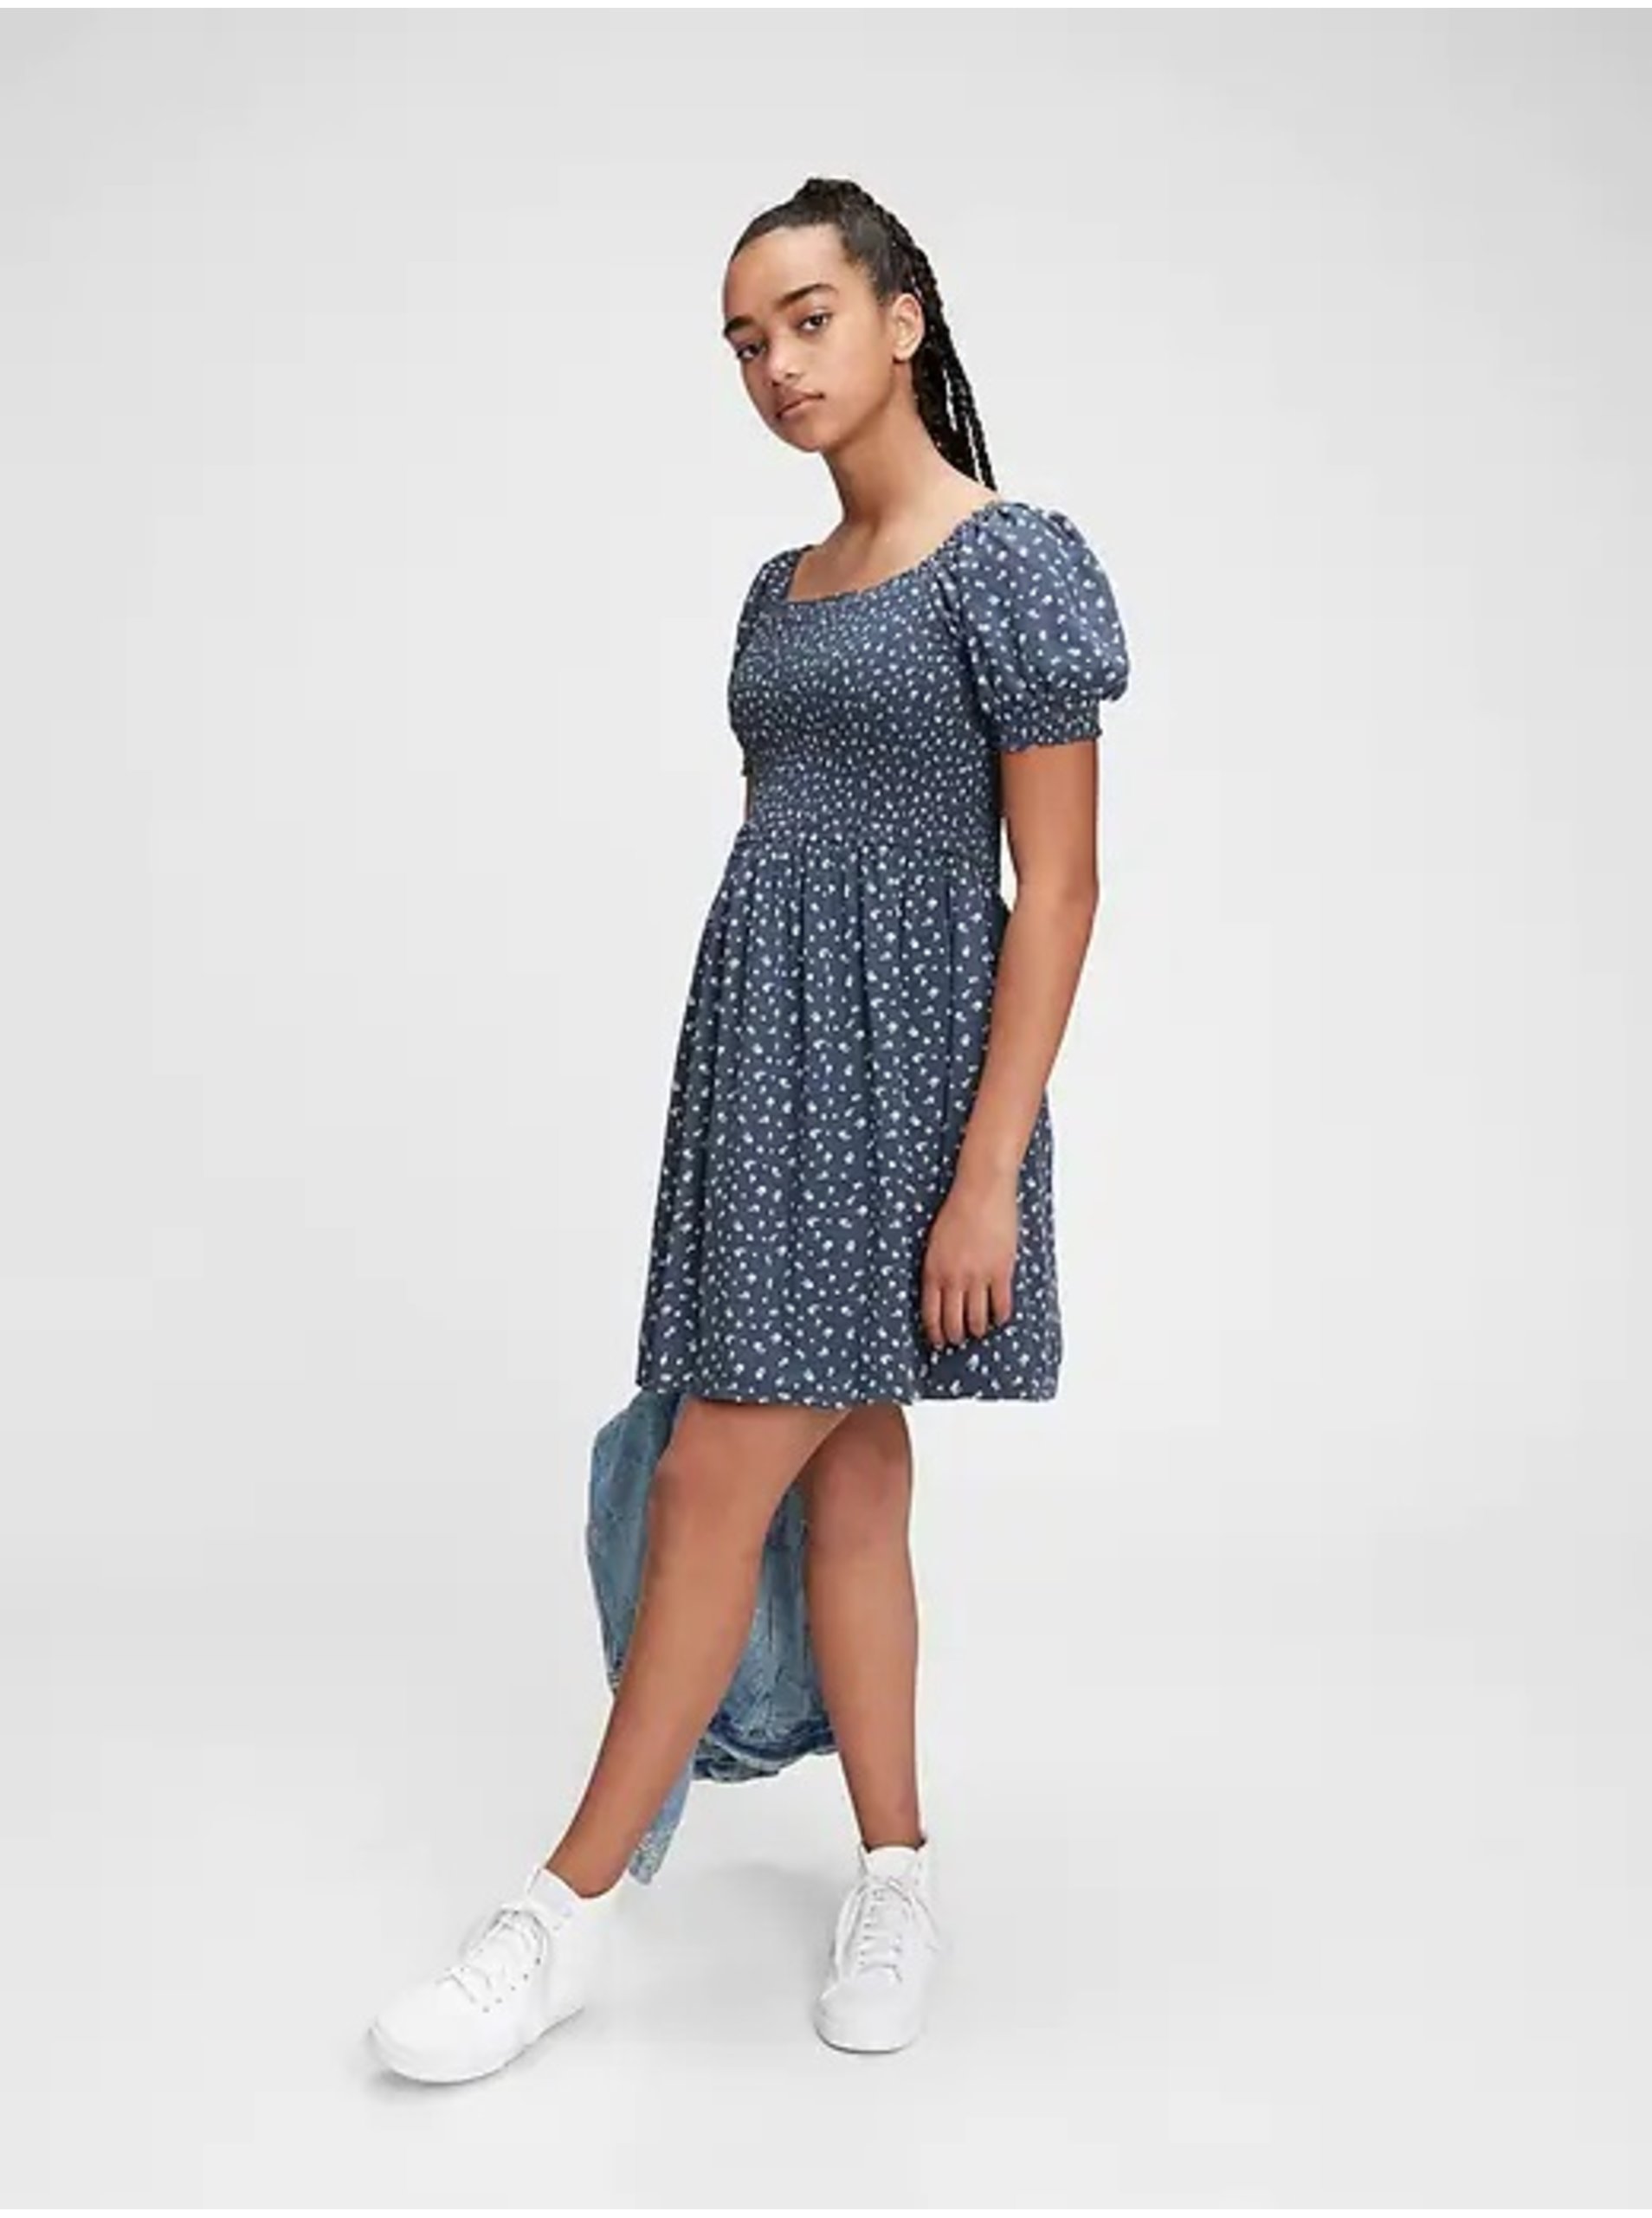 E-shop Modré holčičí šaty GAP teen floral smocked dress